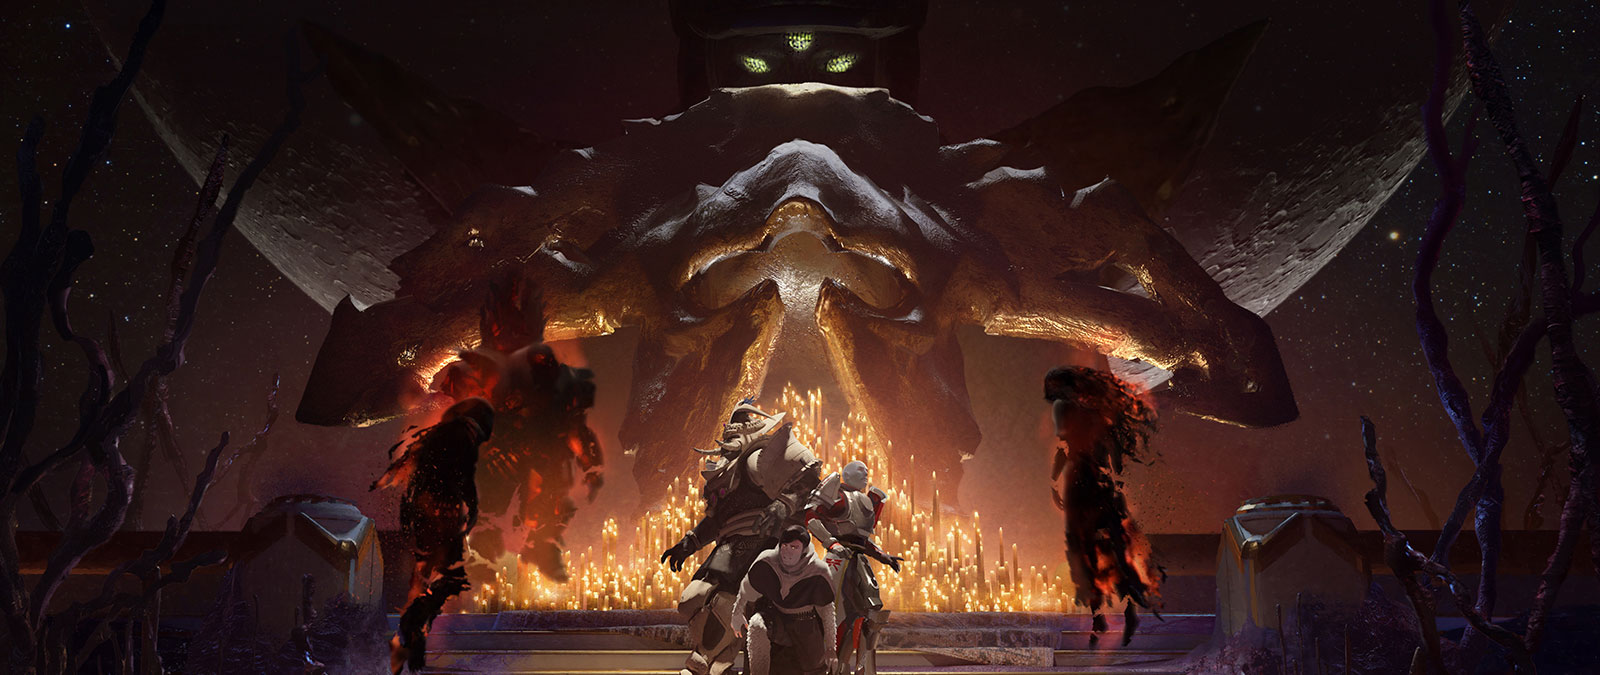 Три босса-кошмара приближаются к группе испуганных игроков, окруженных зажженными свечами, в то же время на заднем плане за ними наблюдает Левиафан. 